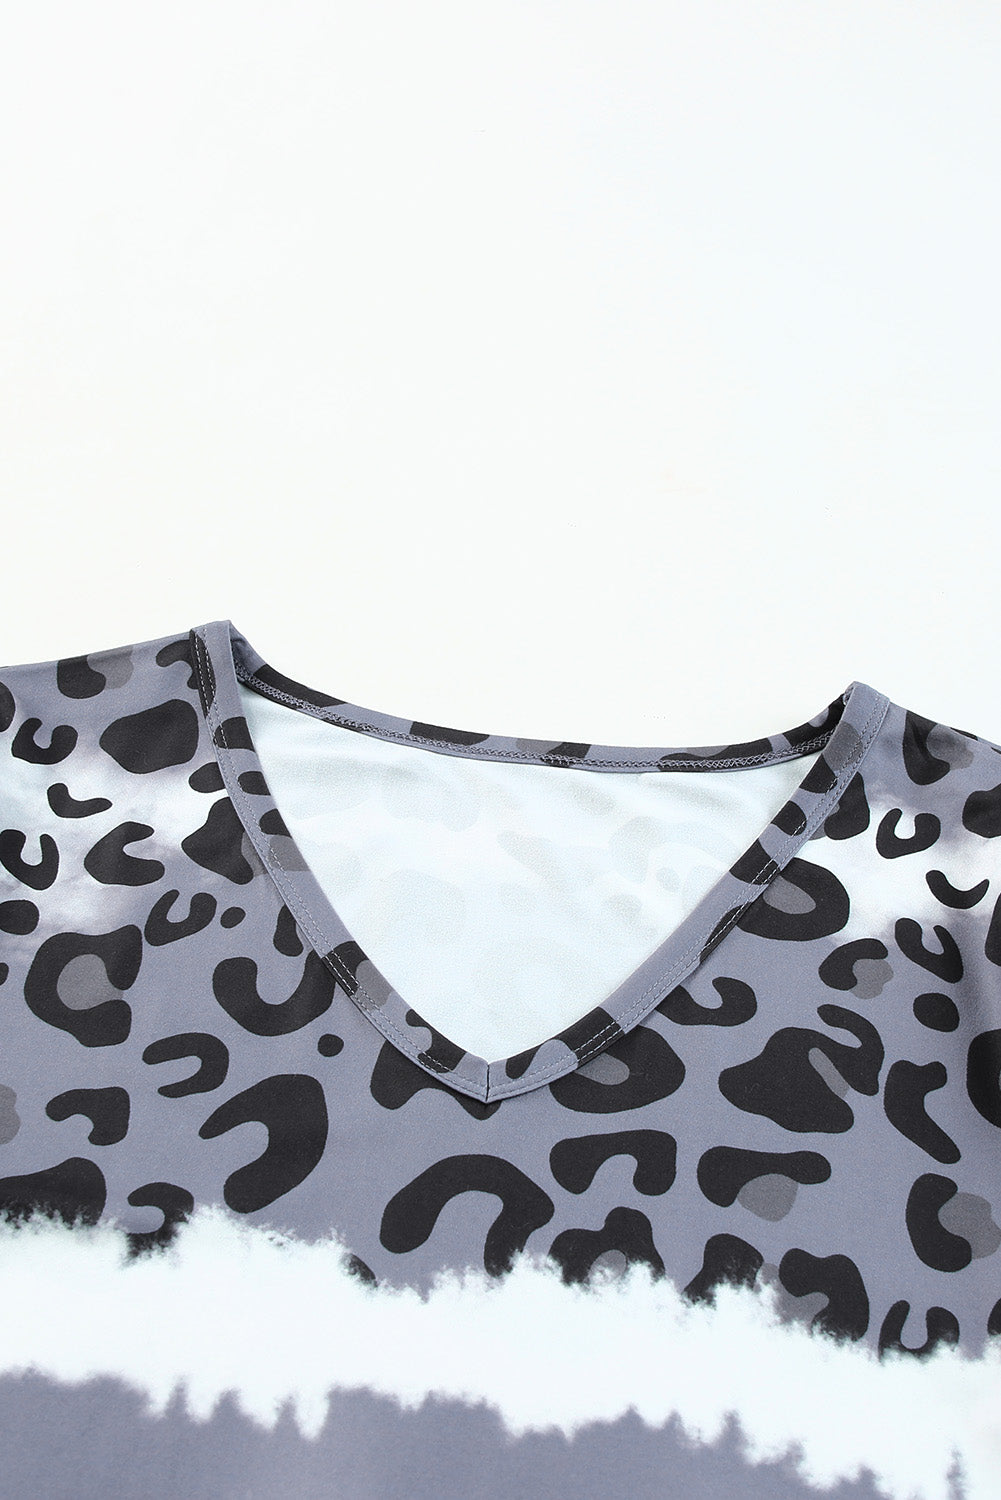 Haut gris à manches courtes et patchwork léopard tie-dye